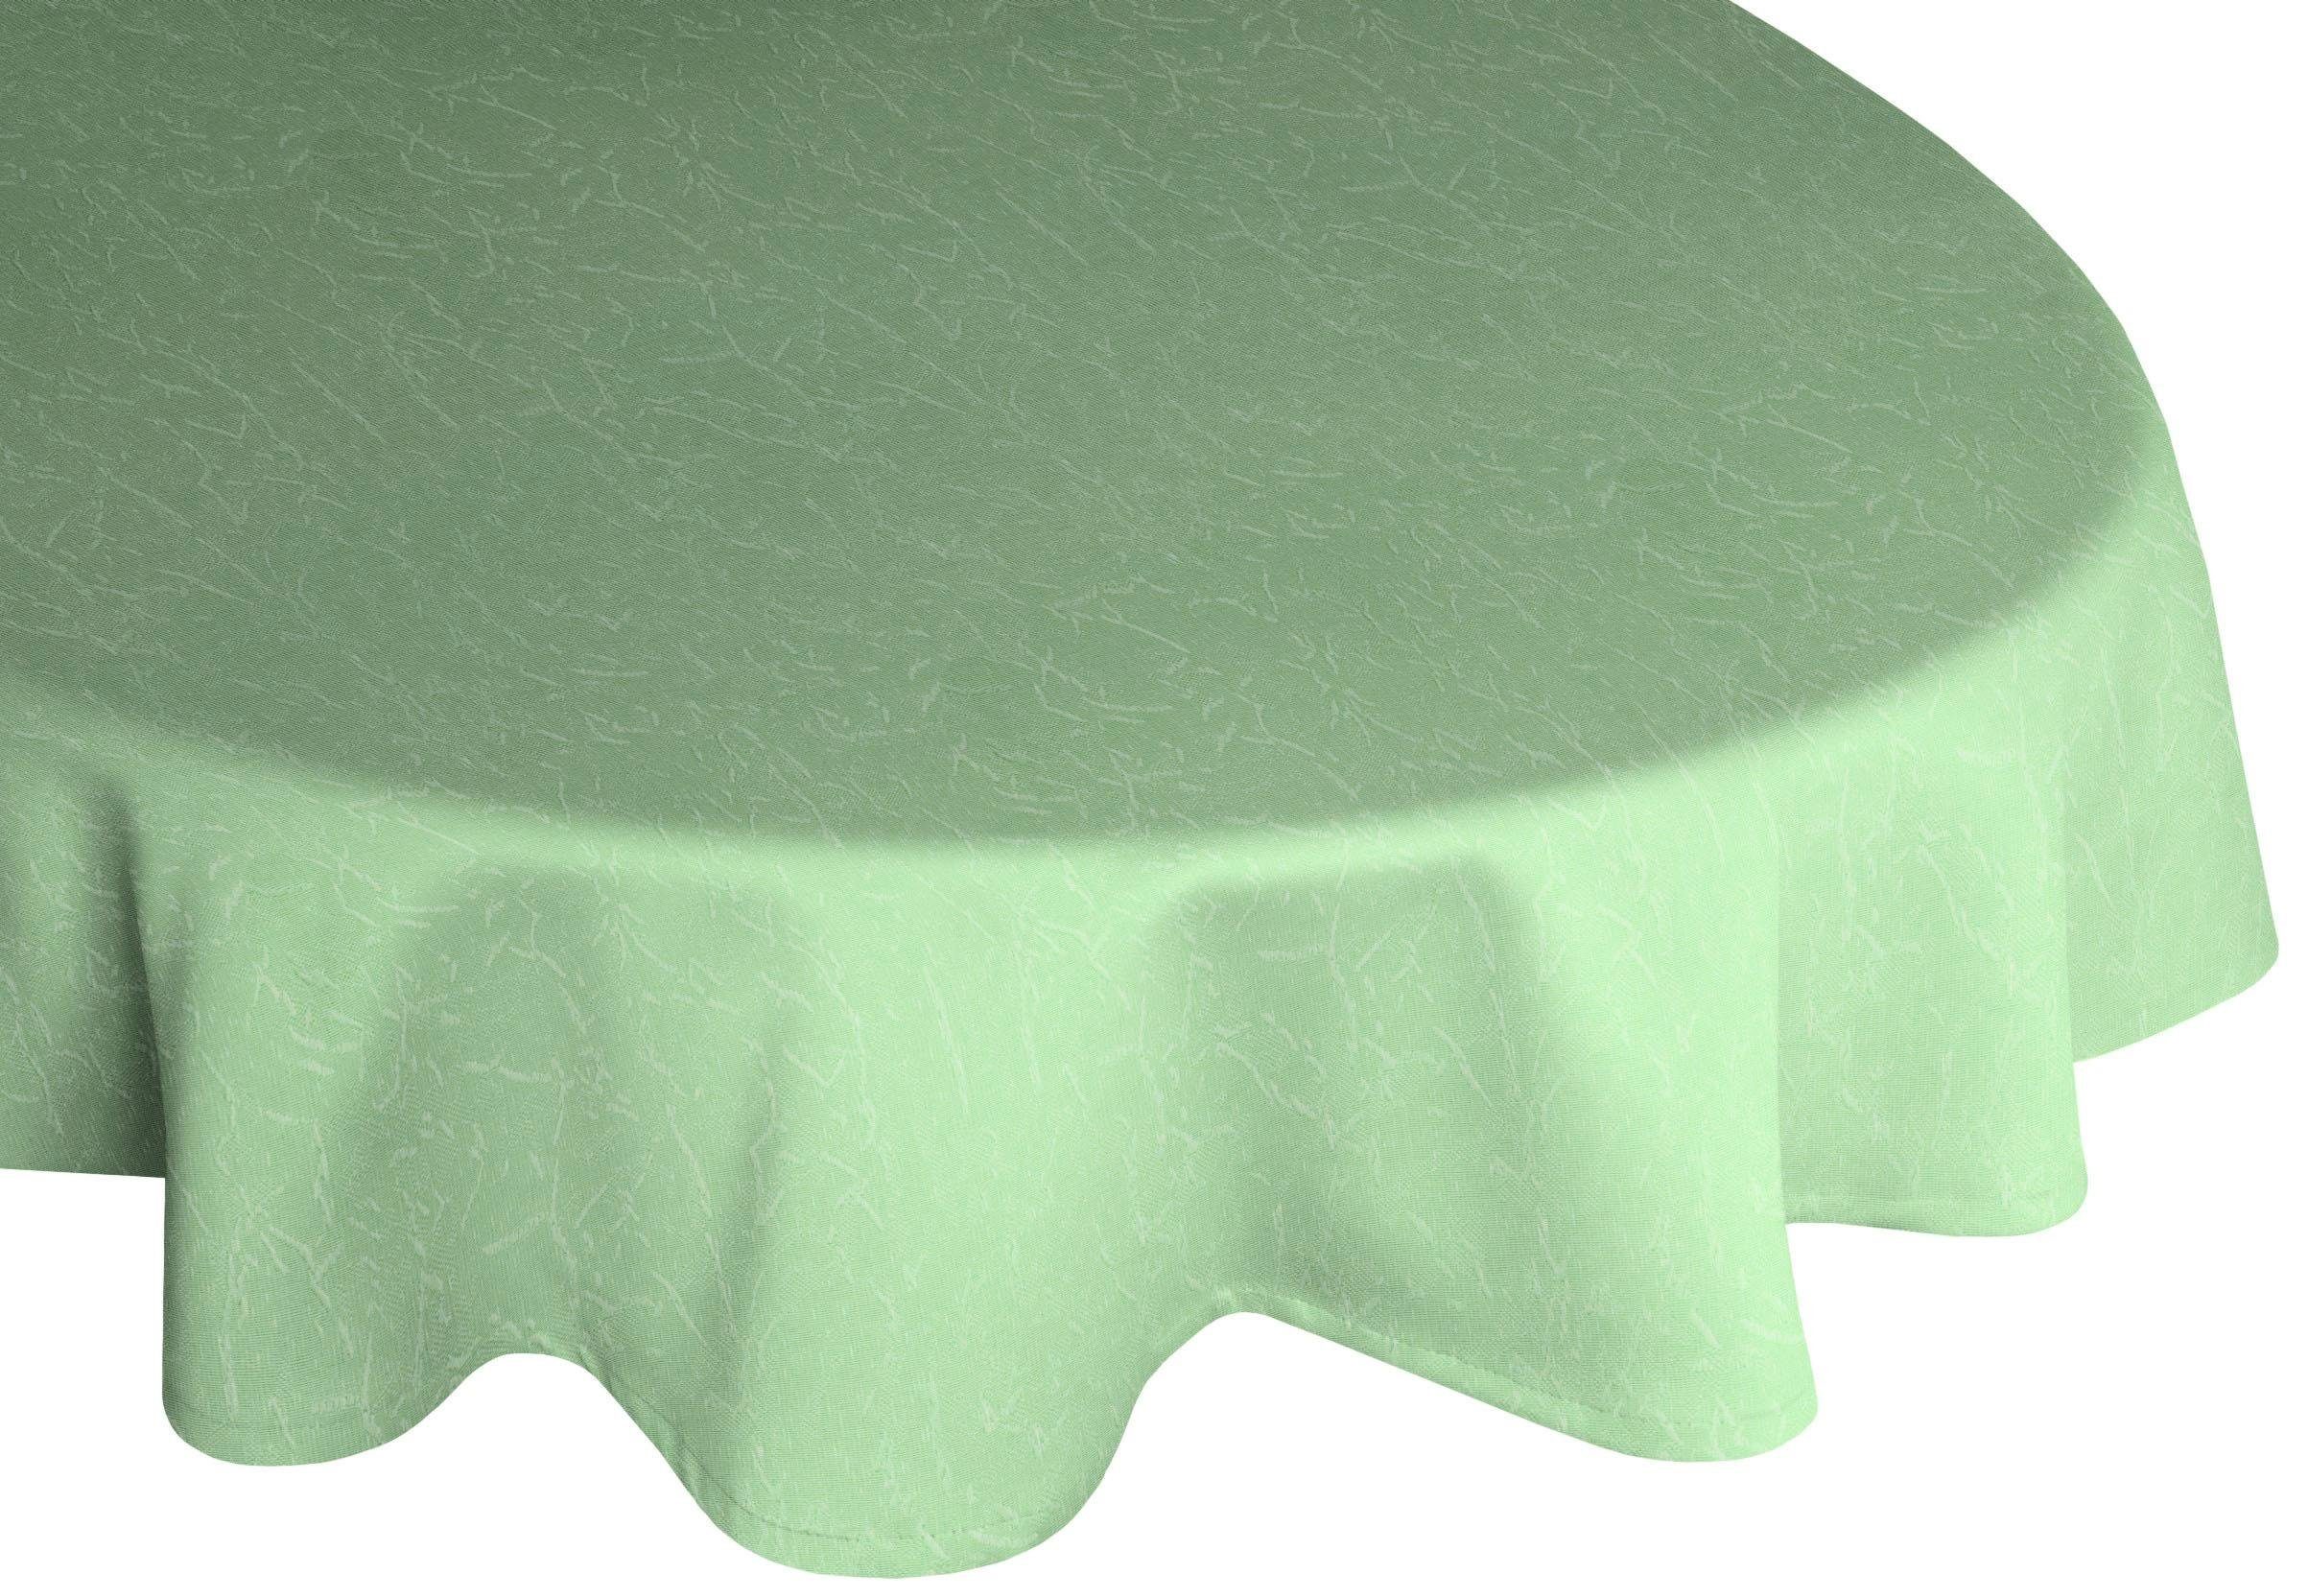 Wirth Tischdecke Lahnstein, oval grün